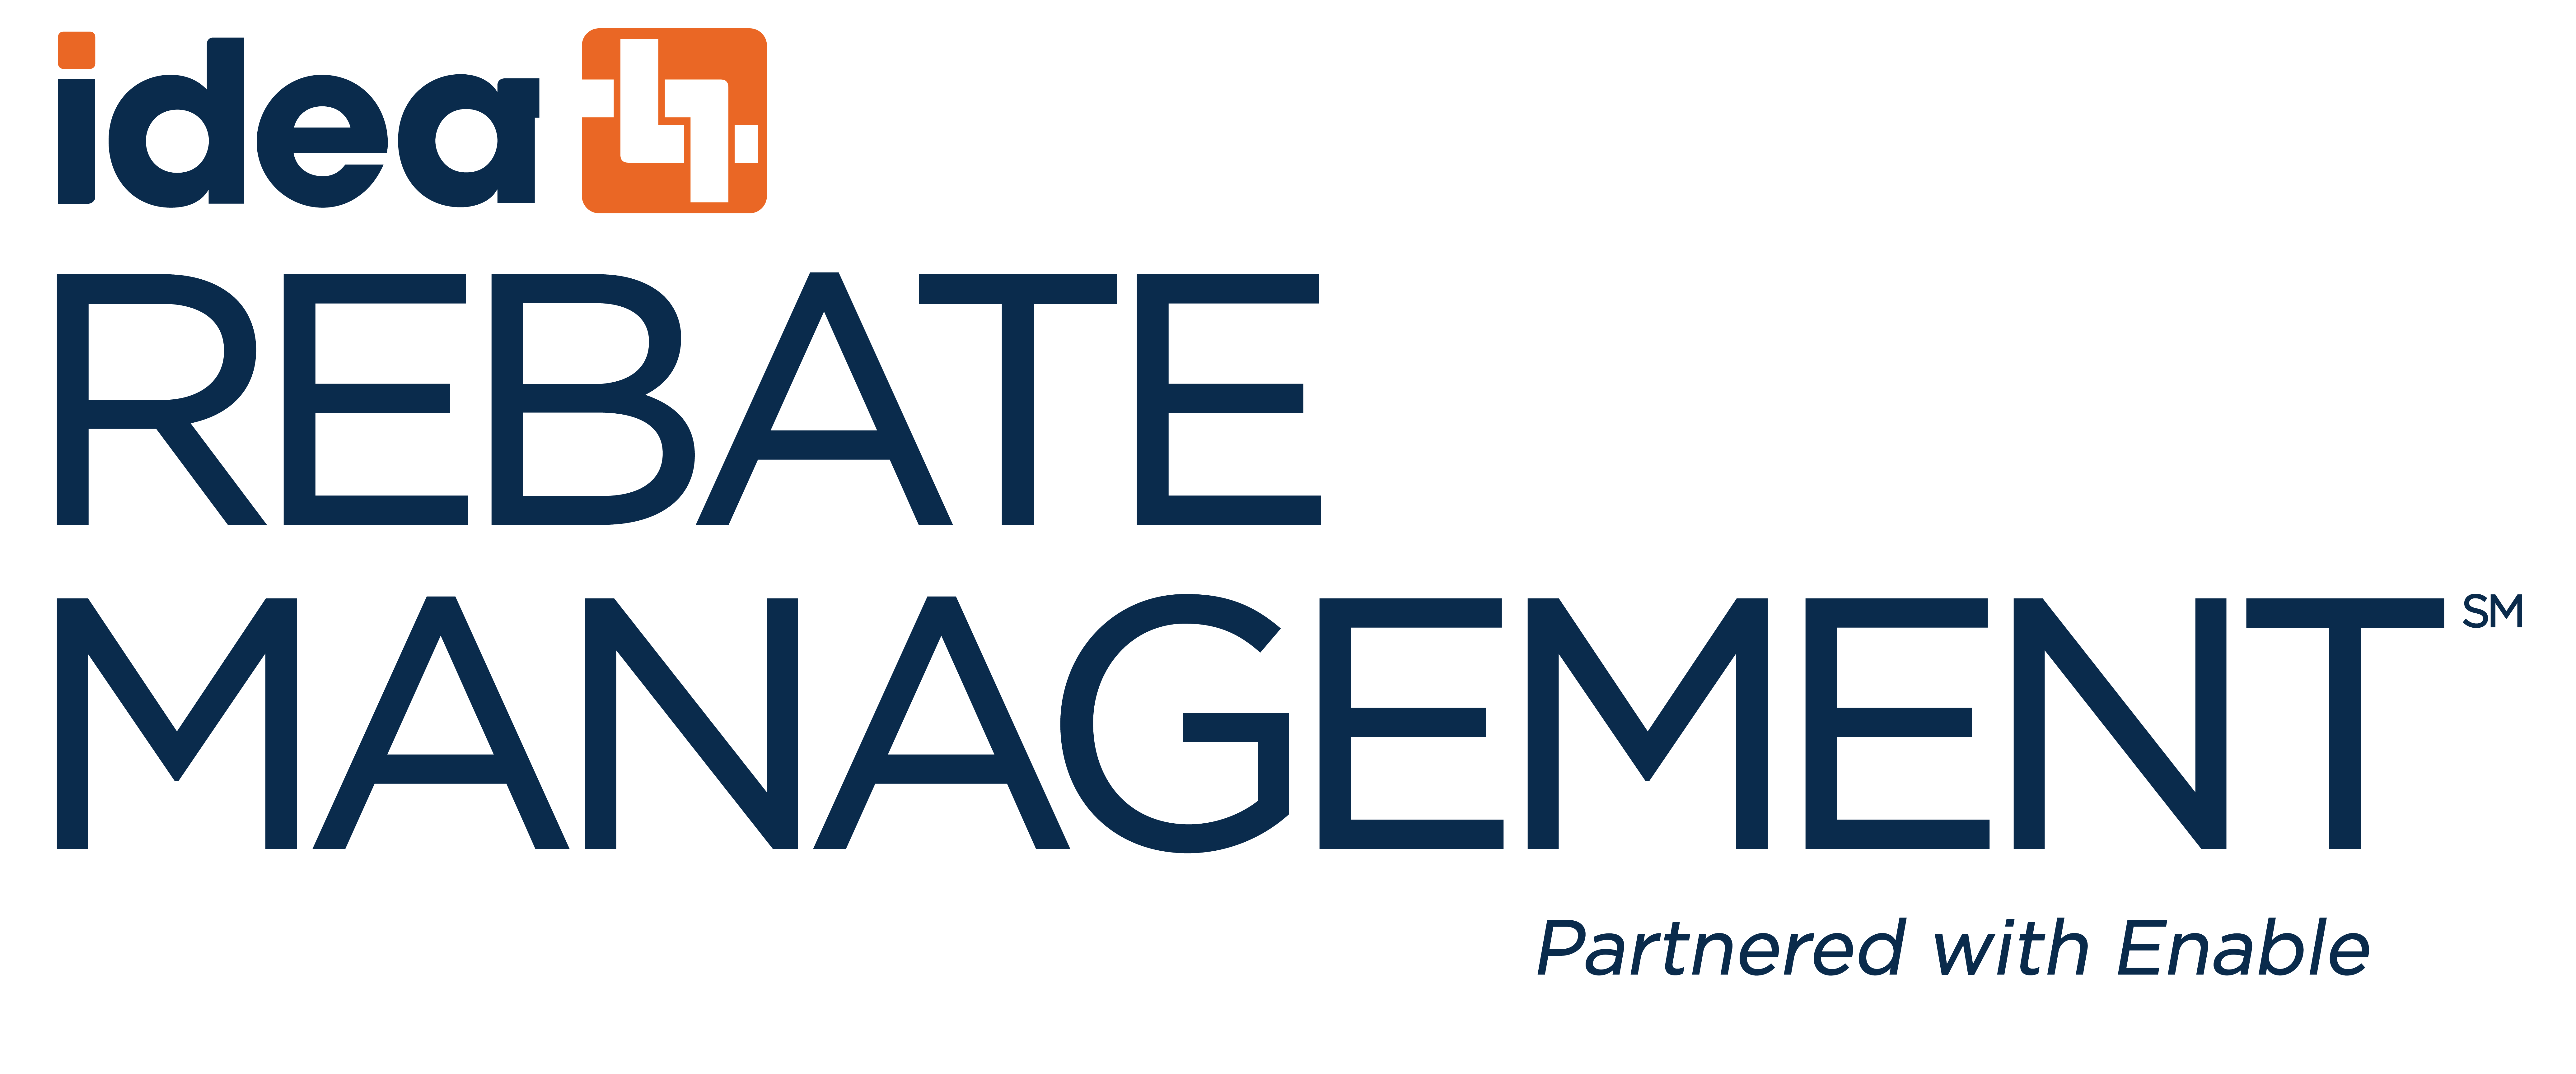 REBATE MANAGEMENT + Partnered